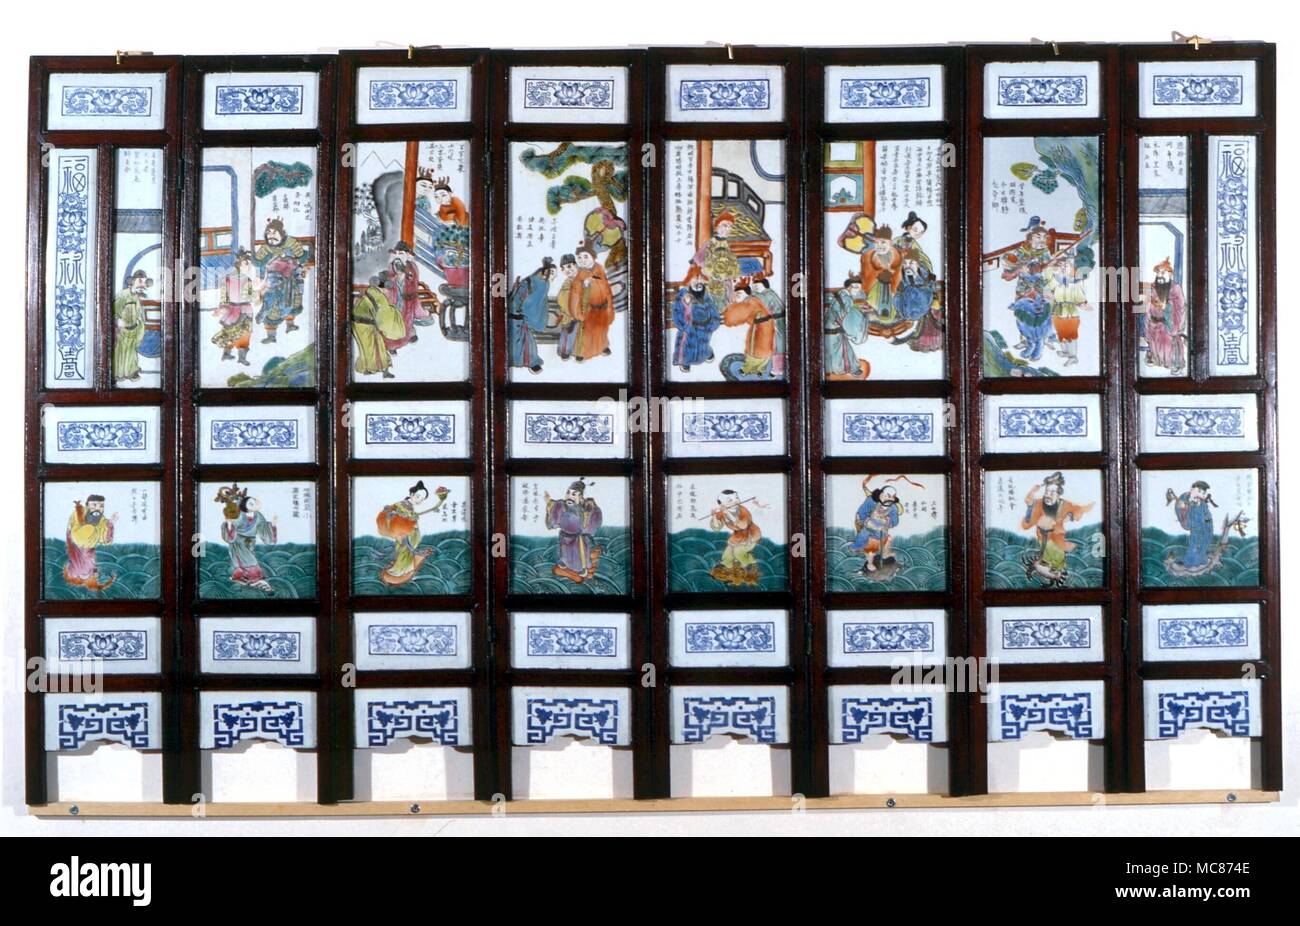 Le taoïsme chinois du 19e siècle, l'écran avec l'encart 600x600. Le registre inférieur représente les huit immortels de la mythologie taoïste, possédant tous les pouvoirs alchimiques. Le registre supérieur records scènes mythiques Banque D'Images